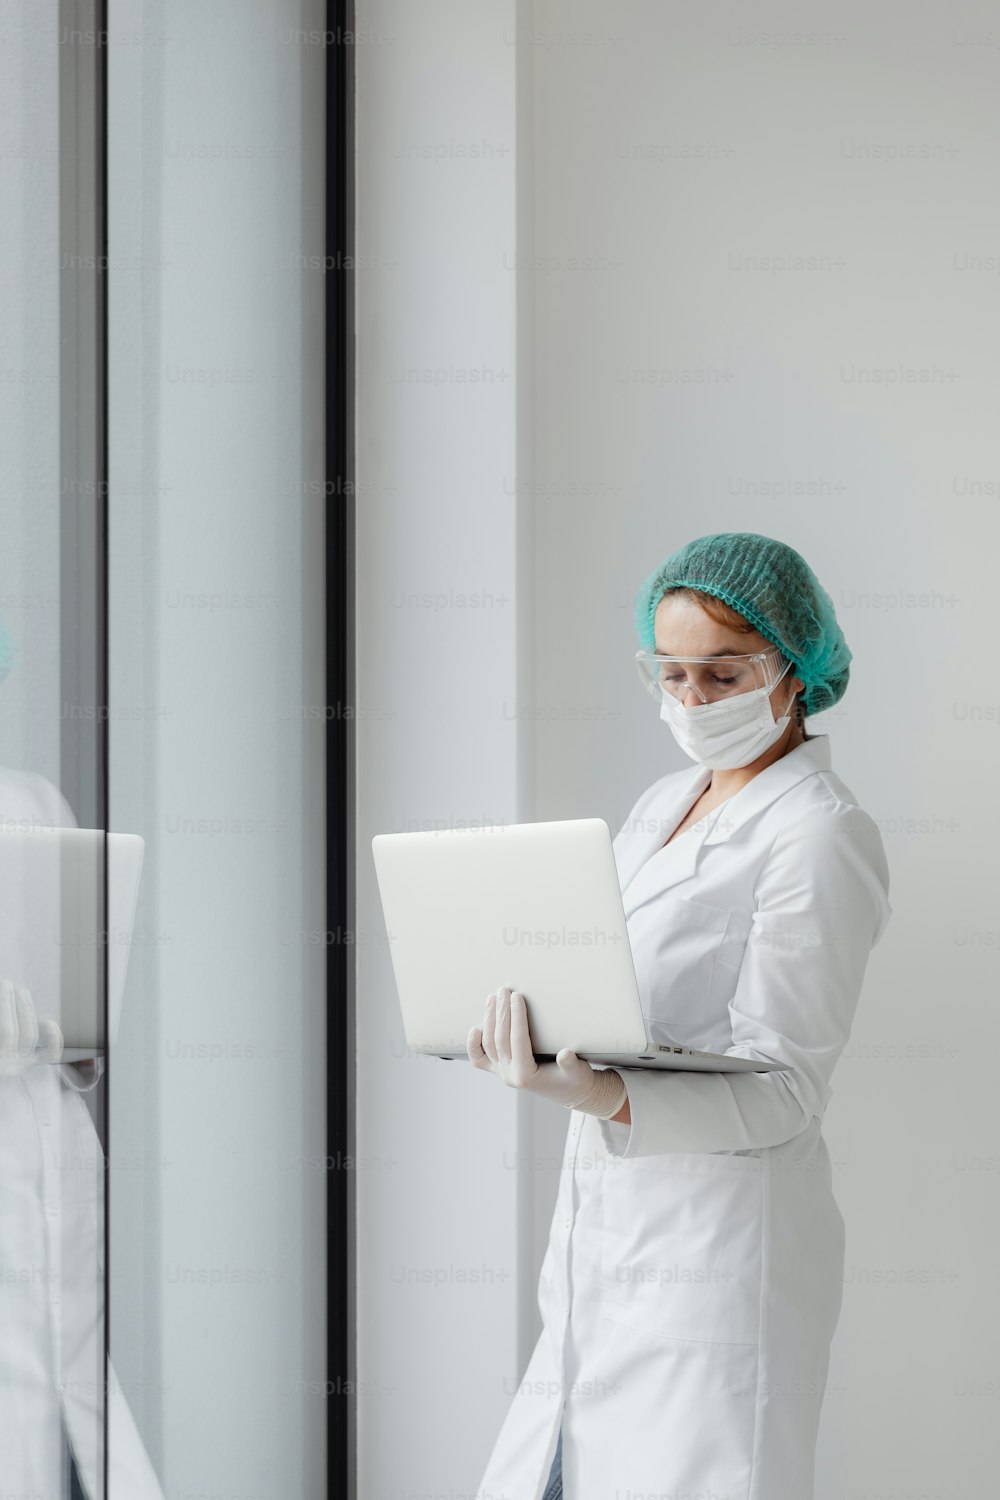 흰색 실험실 코트를 입은 여성이 노트북을 사용하고 있다